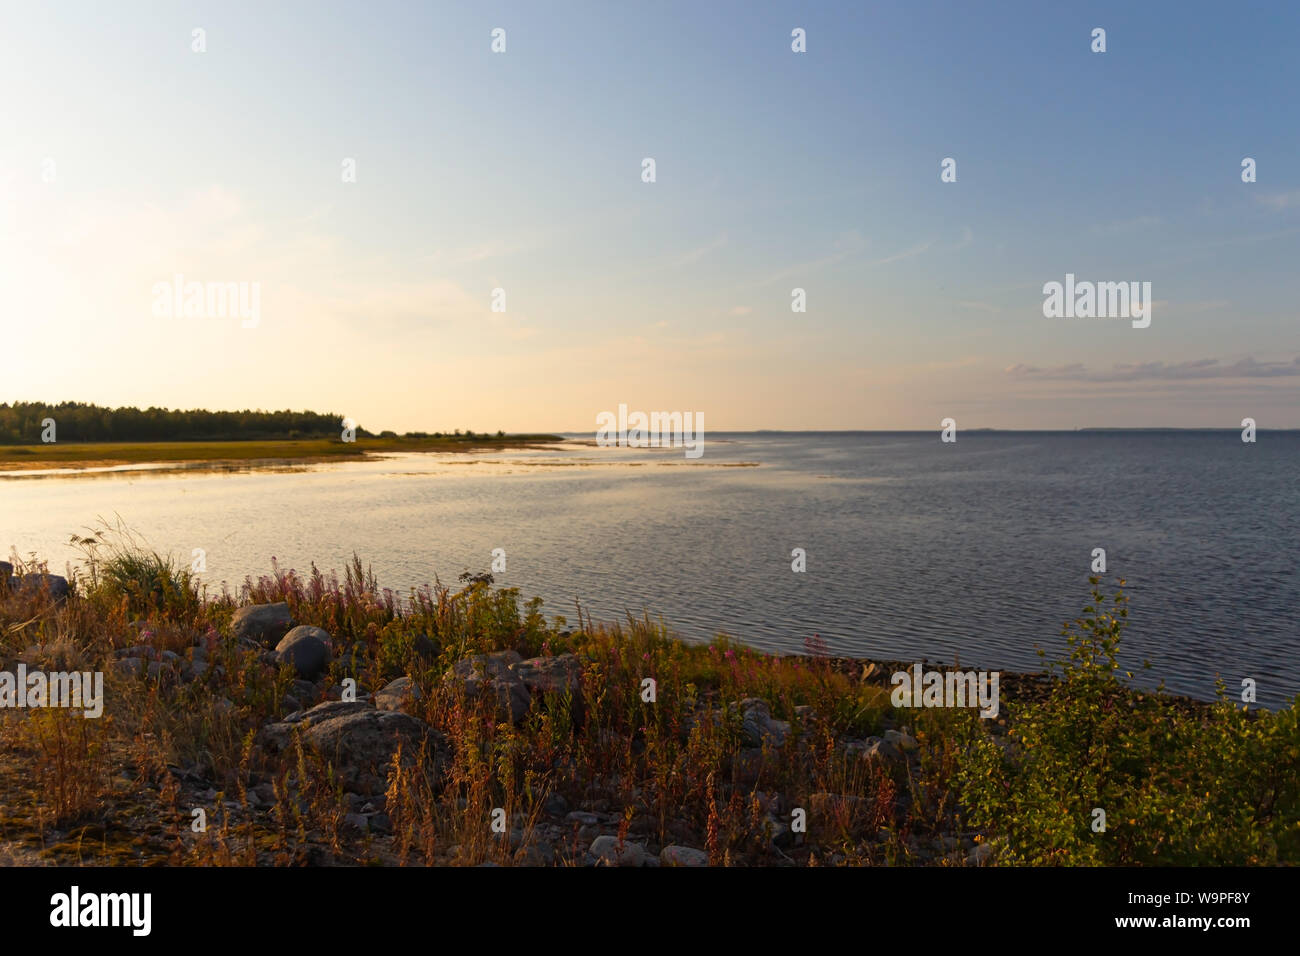 Hailuoto Island (Huikku beach )summer evening at sunset,Hailuoto island,North Ostrobothnia,Finland Stock Photo